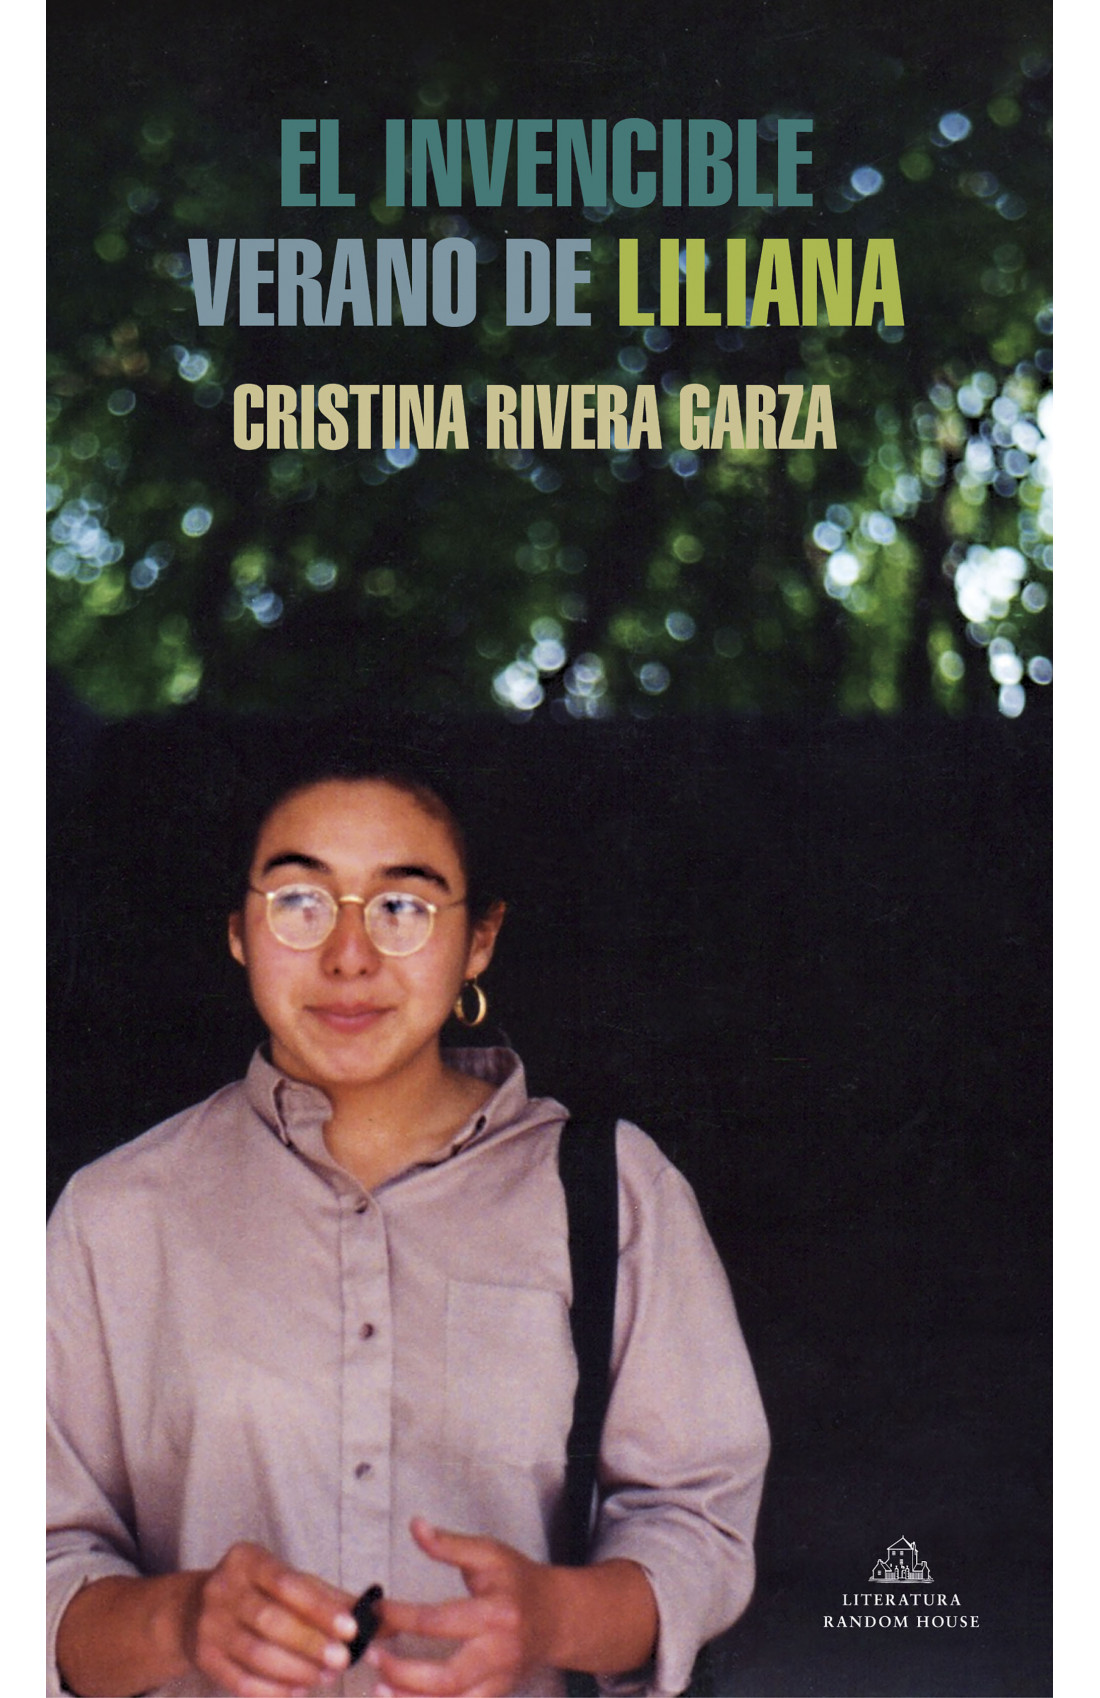 Cristina Rivera Garza: «La curación, si existe, solo es posible si se hace justicia»